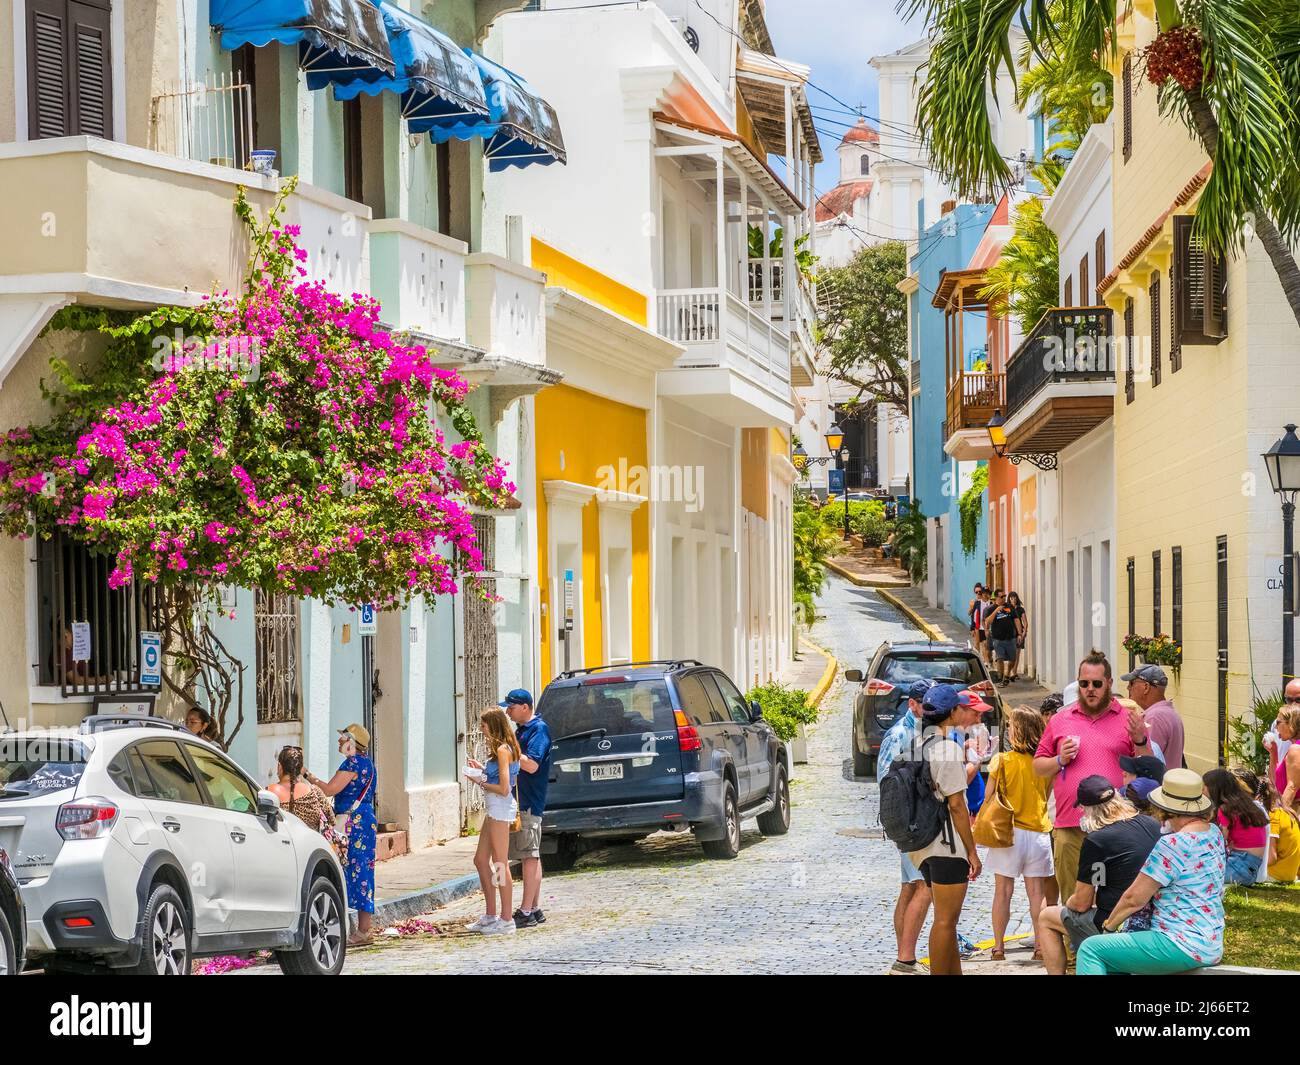 Colorful street scene in Old San Juan Puerto Rico Stock Photo